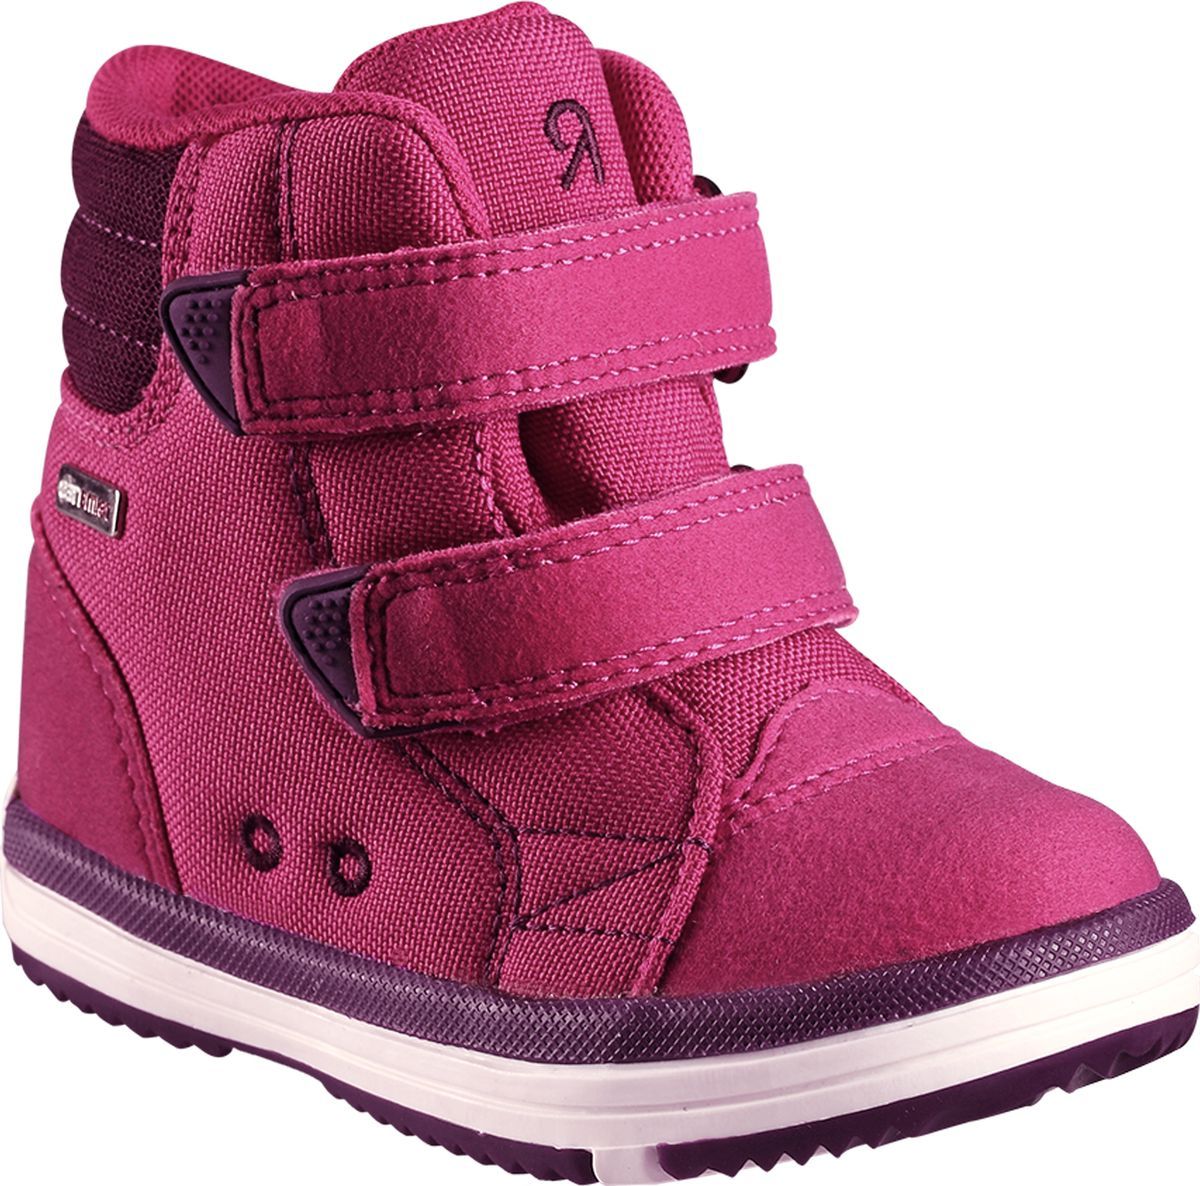 Ботинки детские Reima Patter, цвет: розовый. 5693443600. Размер 24